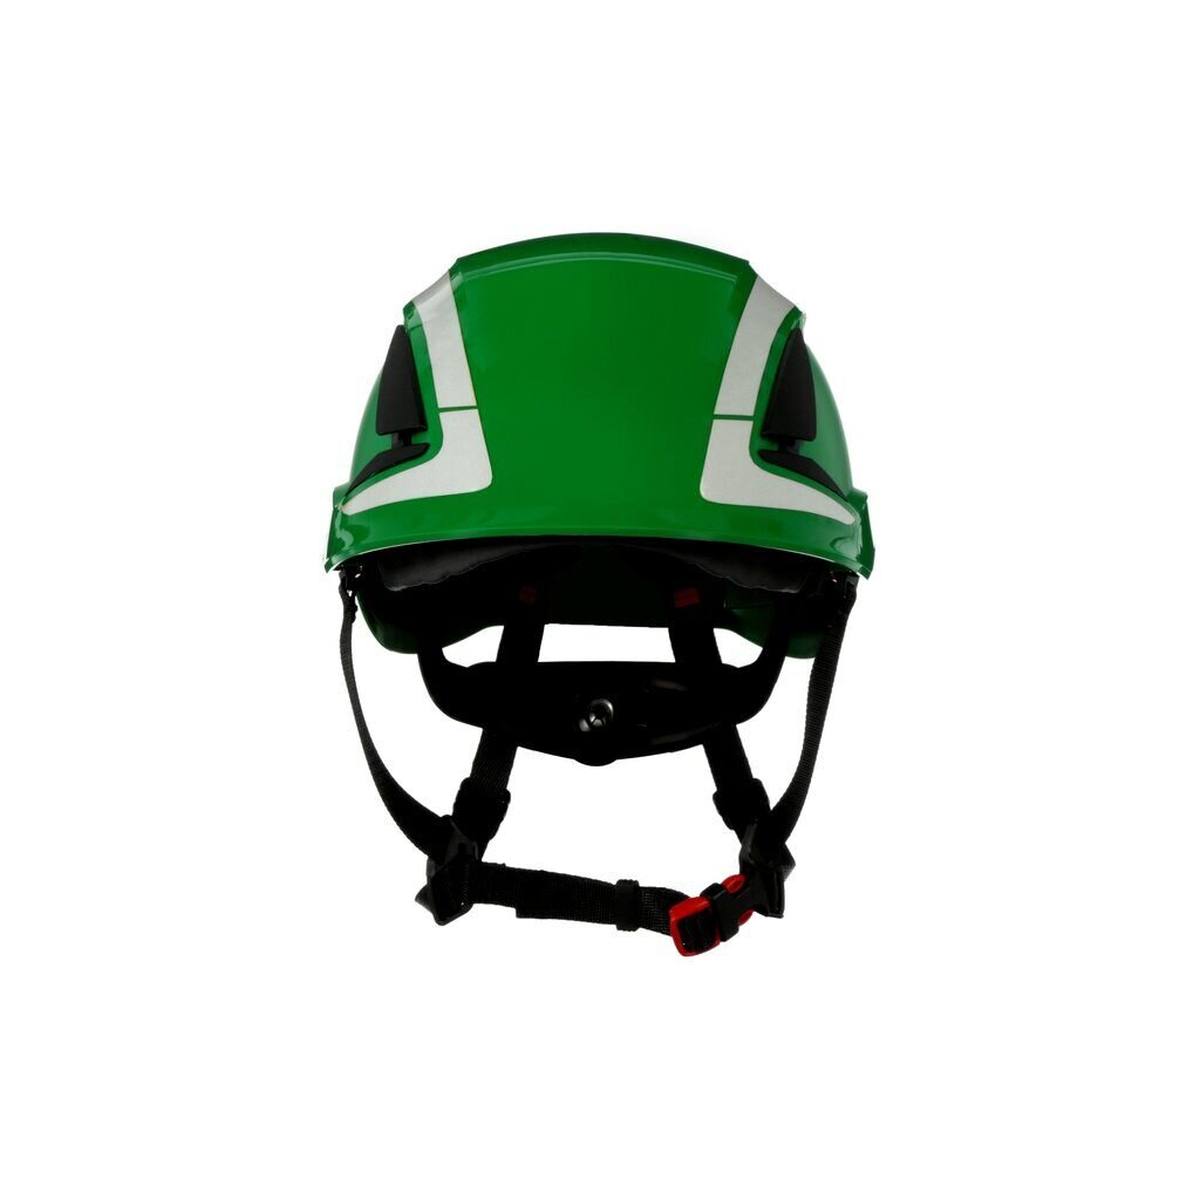 3M SecureFit safety helmet, X5003V-CE, green, ventilated, reflective, CE